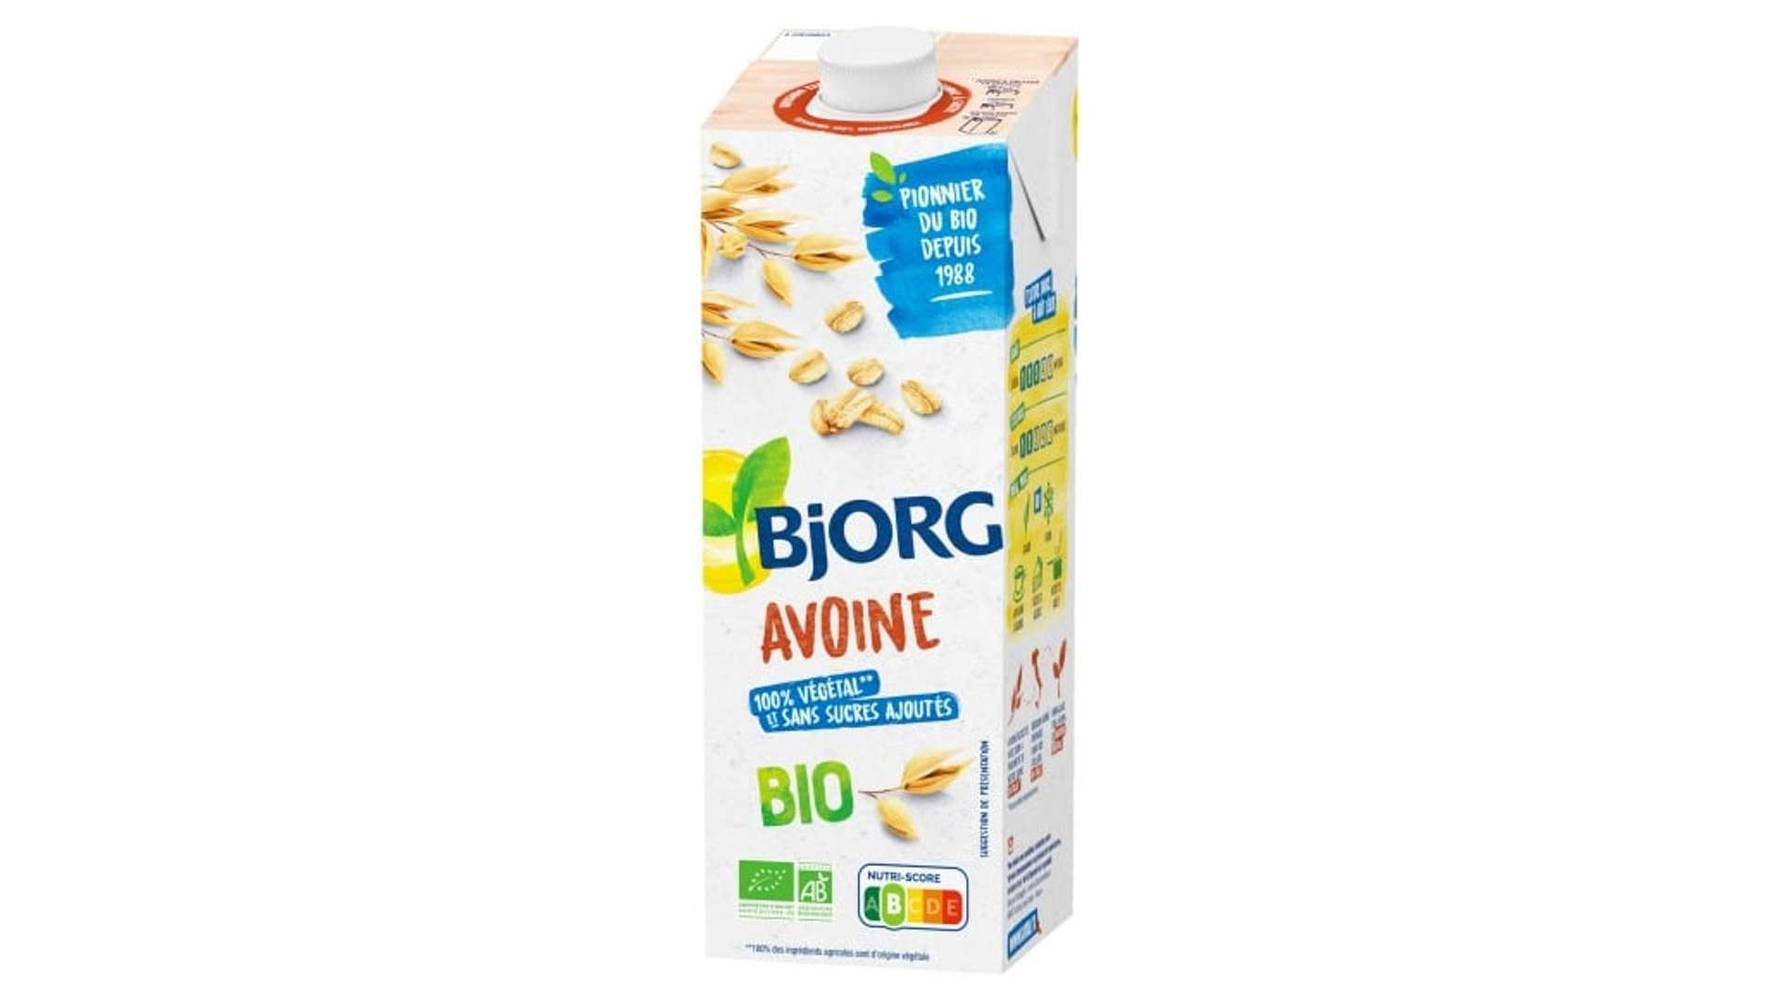 Bjorg - Boisson végétale bio (1 L) (avoine)